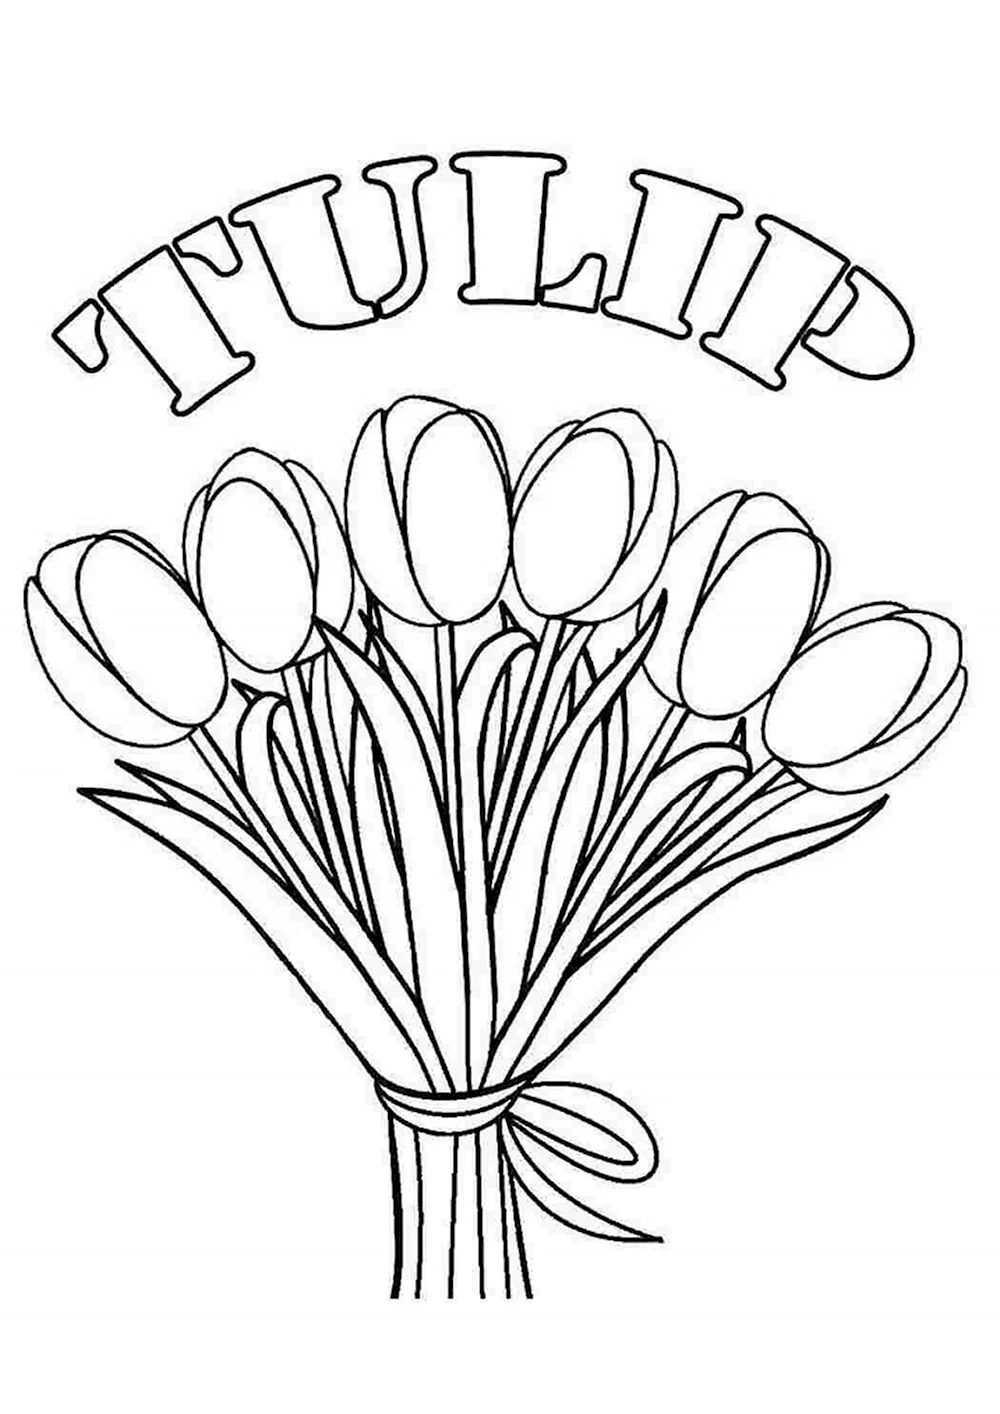 Раскраска Букет тюльпанов | Раскраски для детей печать онлайн